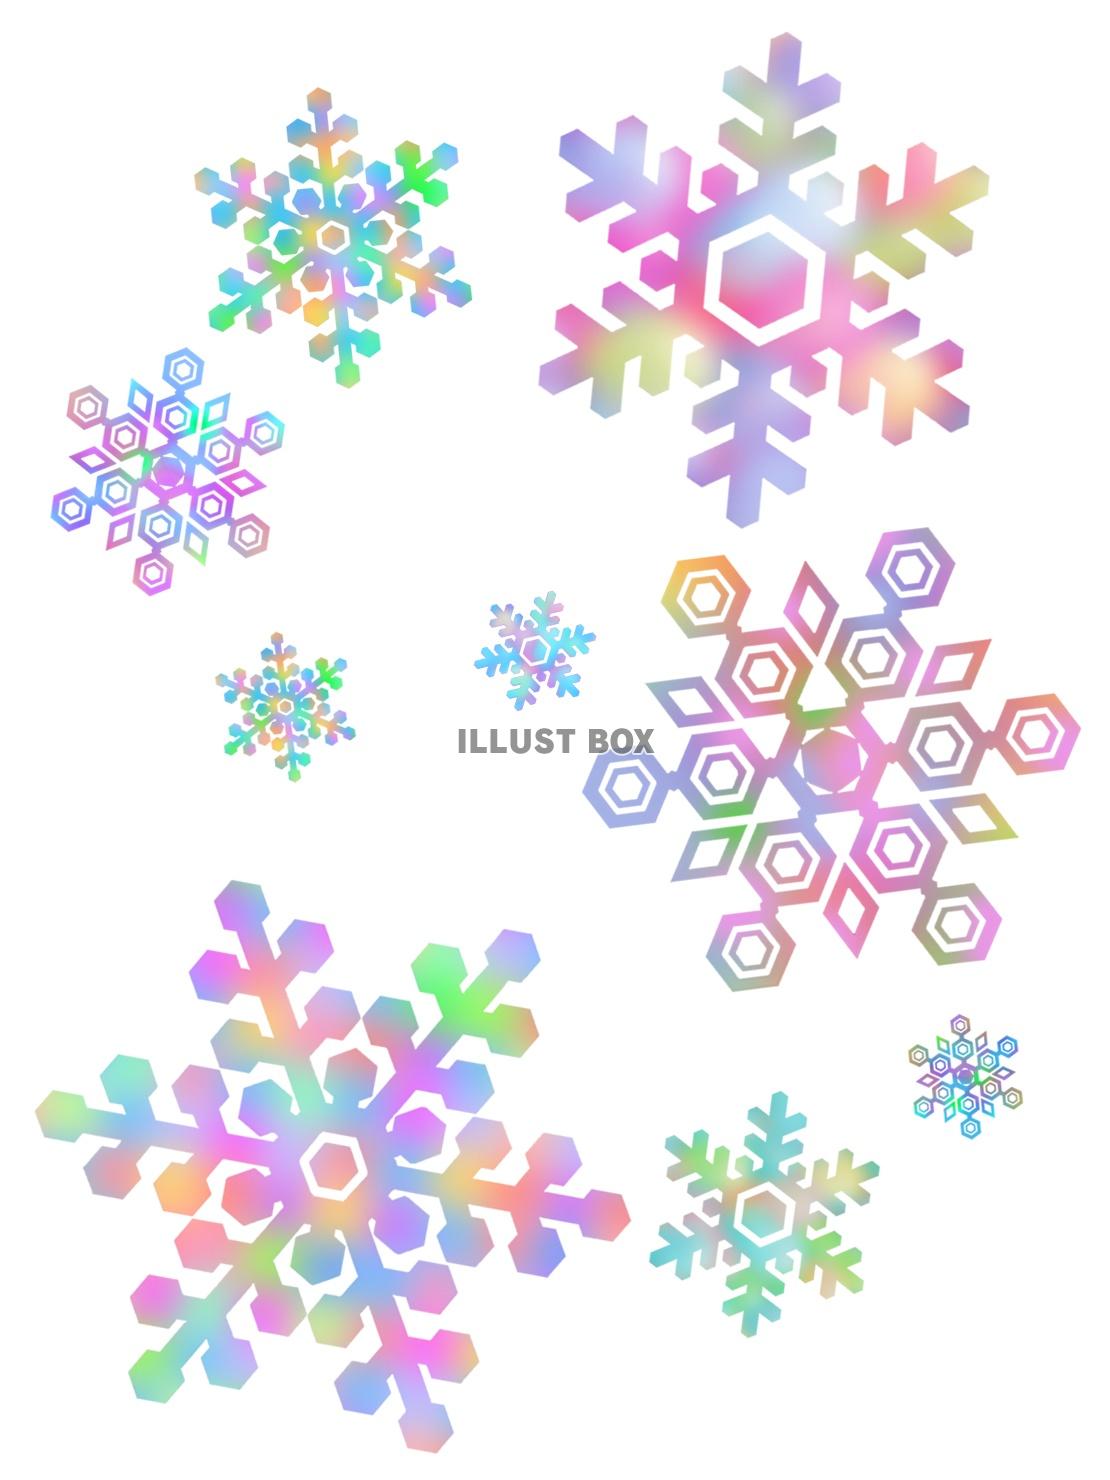 無料イラスト 雪の結晶壁紙画像カラフル背景素材イラスト ベクターあり